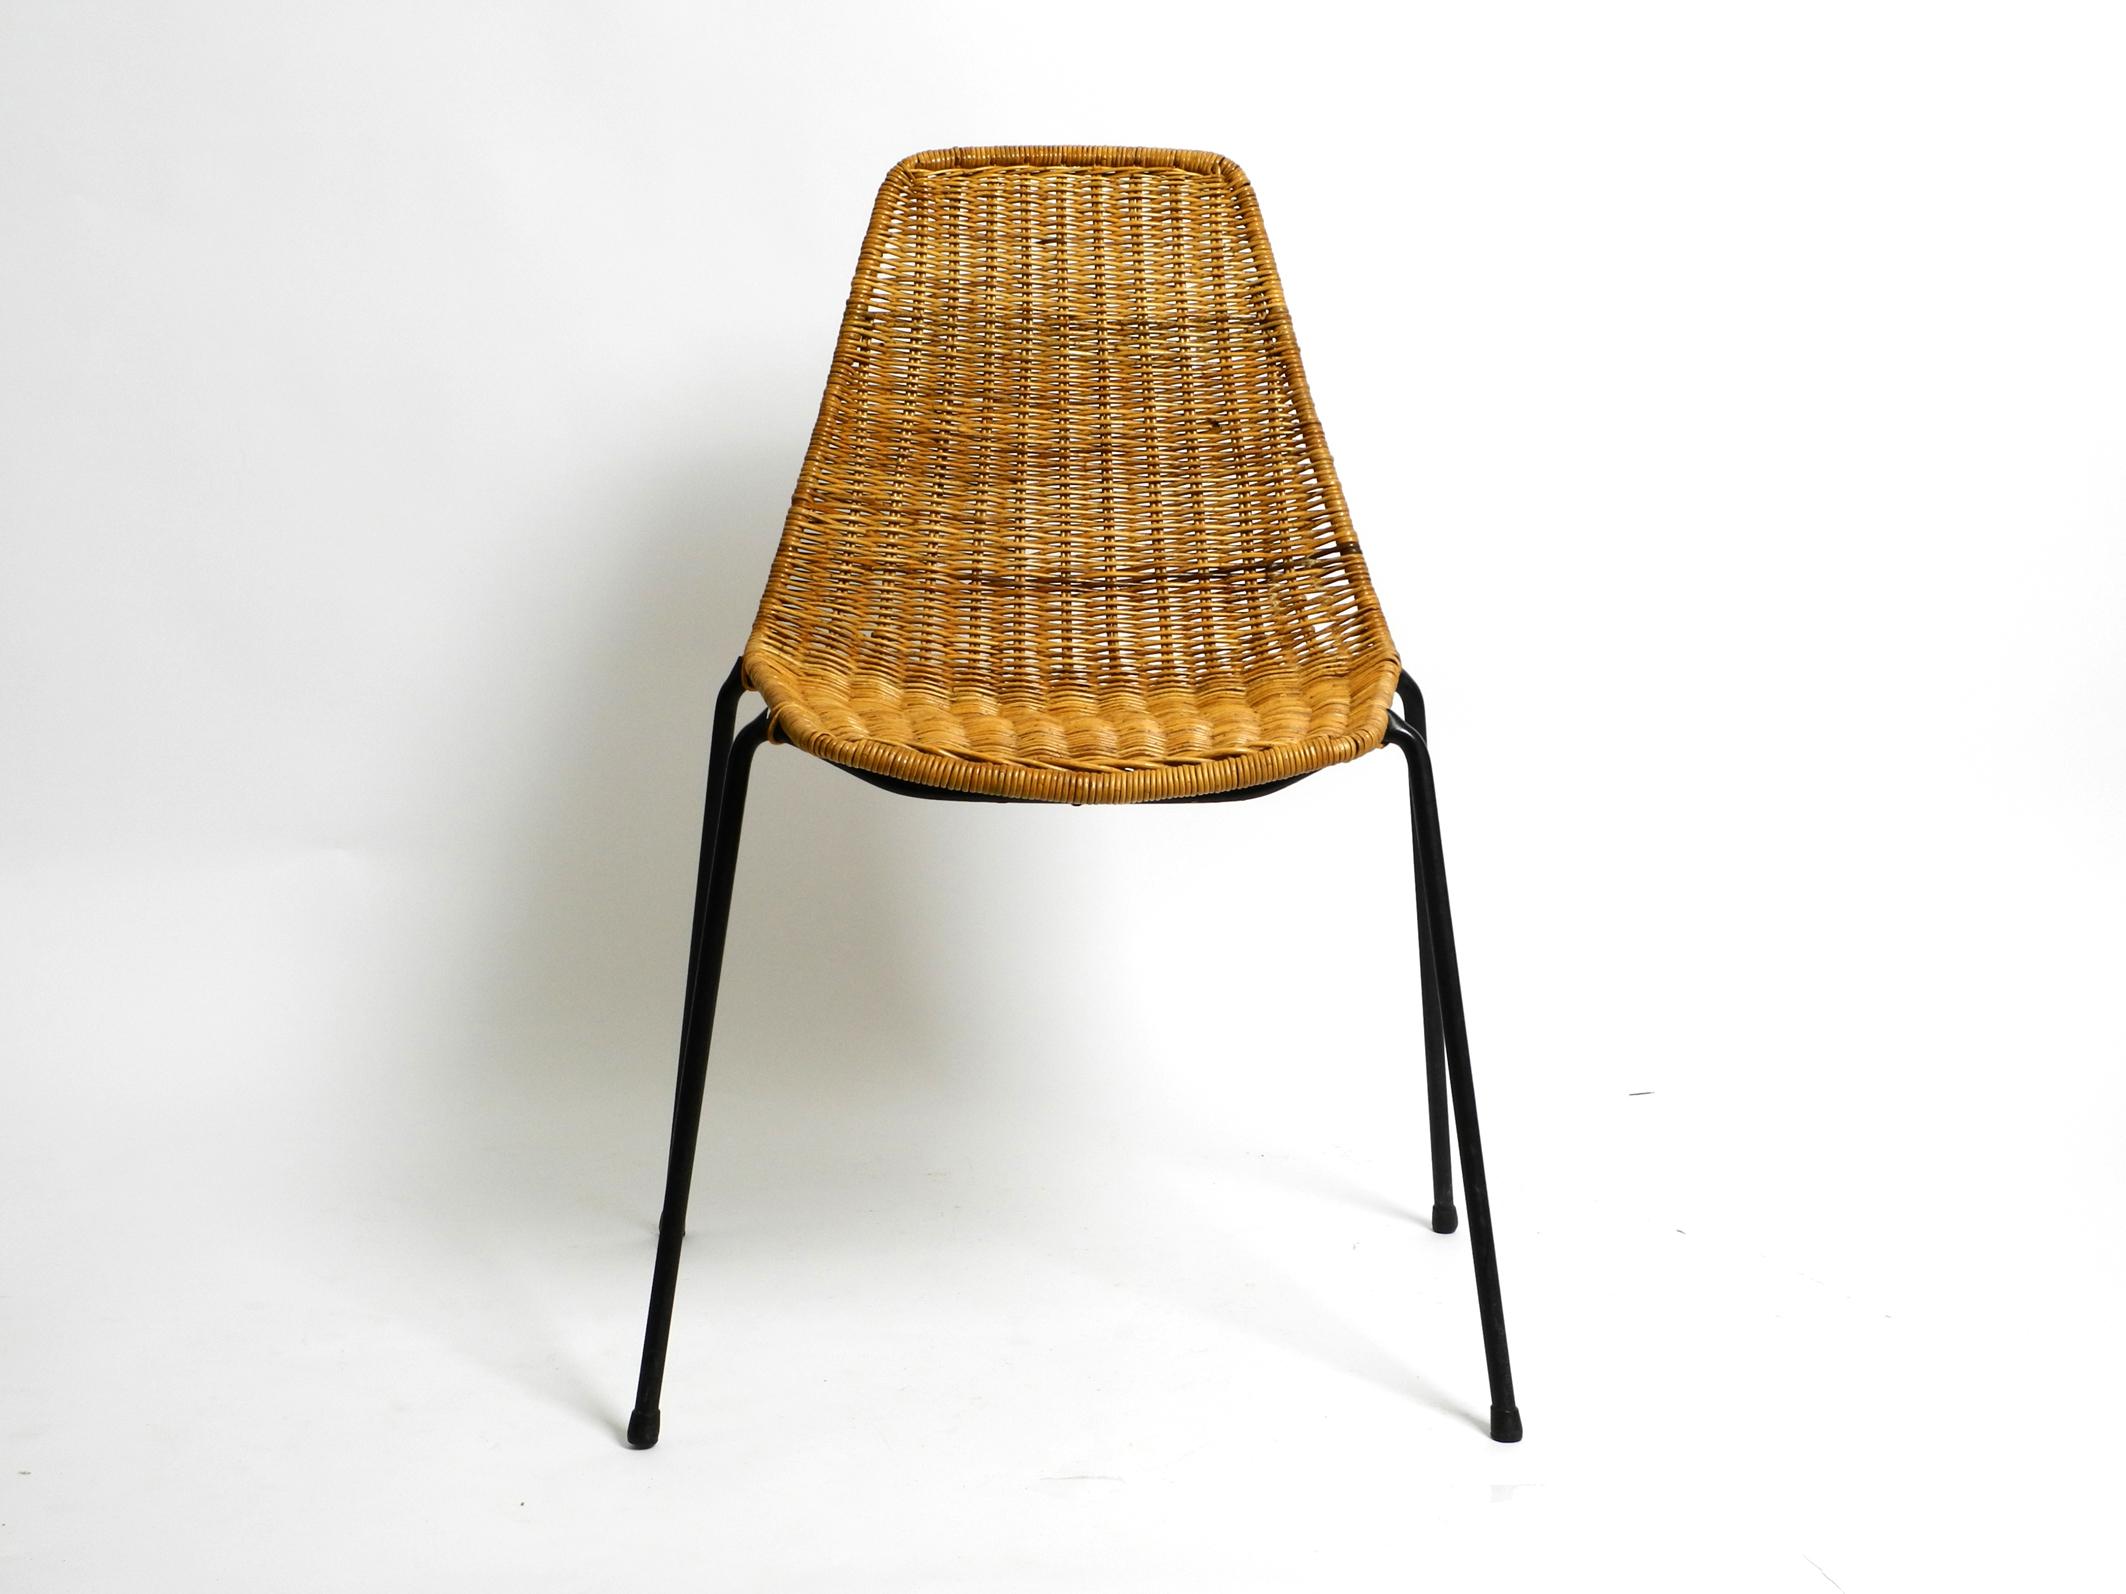 Original italienischer Mid-Century Modern Gian Franco Legler Basket Chair in sehr gutem Vintage-Zustand.
Sehr gut erhalten und ohne Schäden.
Das Rattan ist ohne Brüche oder Löcher.
Der Metallrahmen ist rostfrei und hat noch die originale schwarze